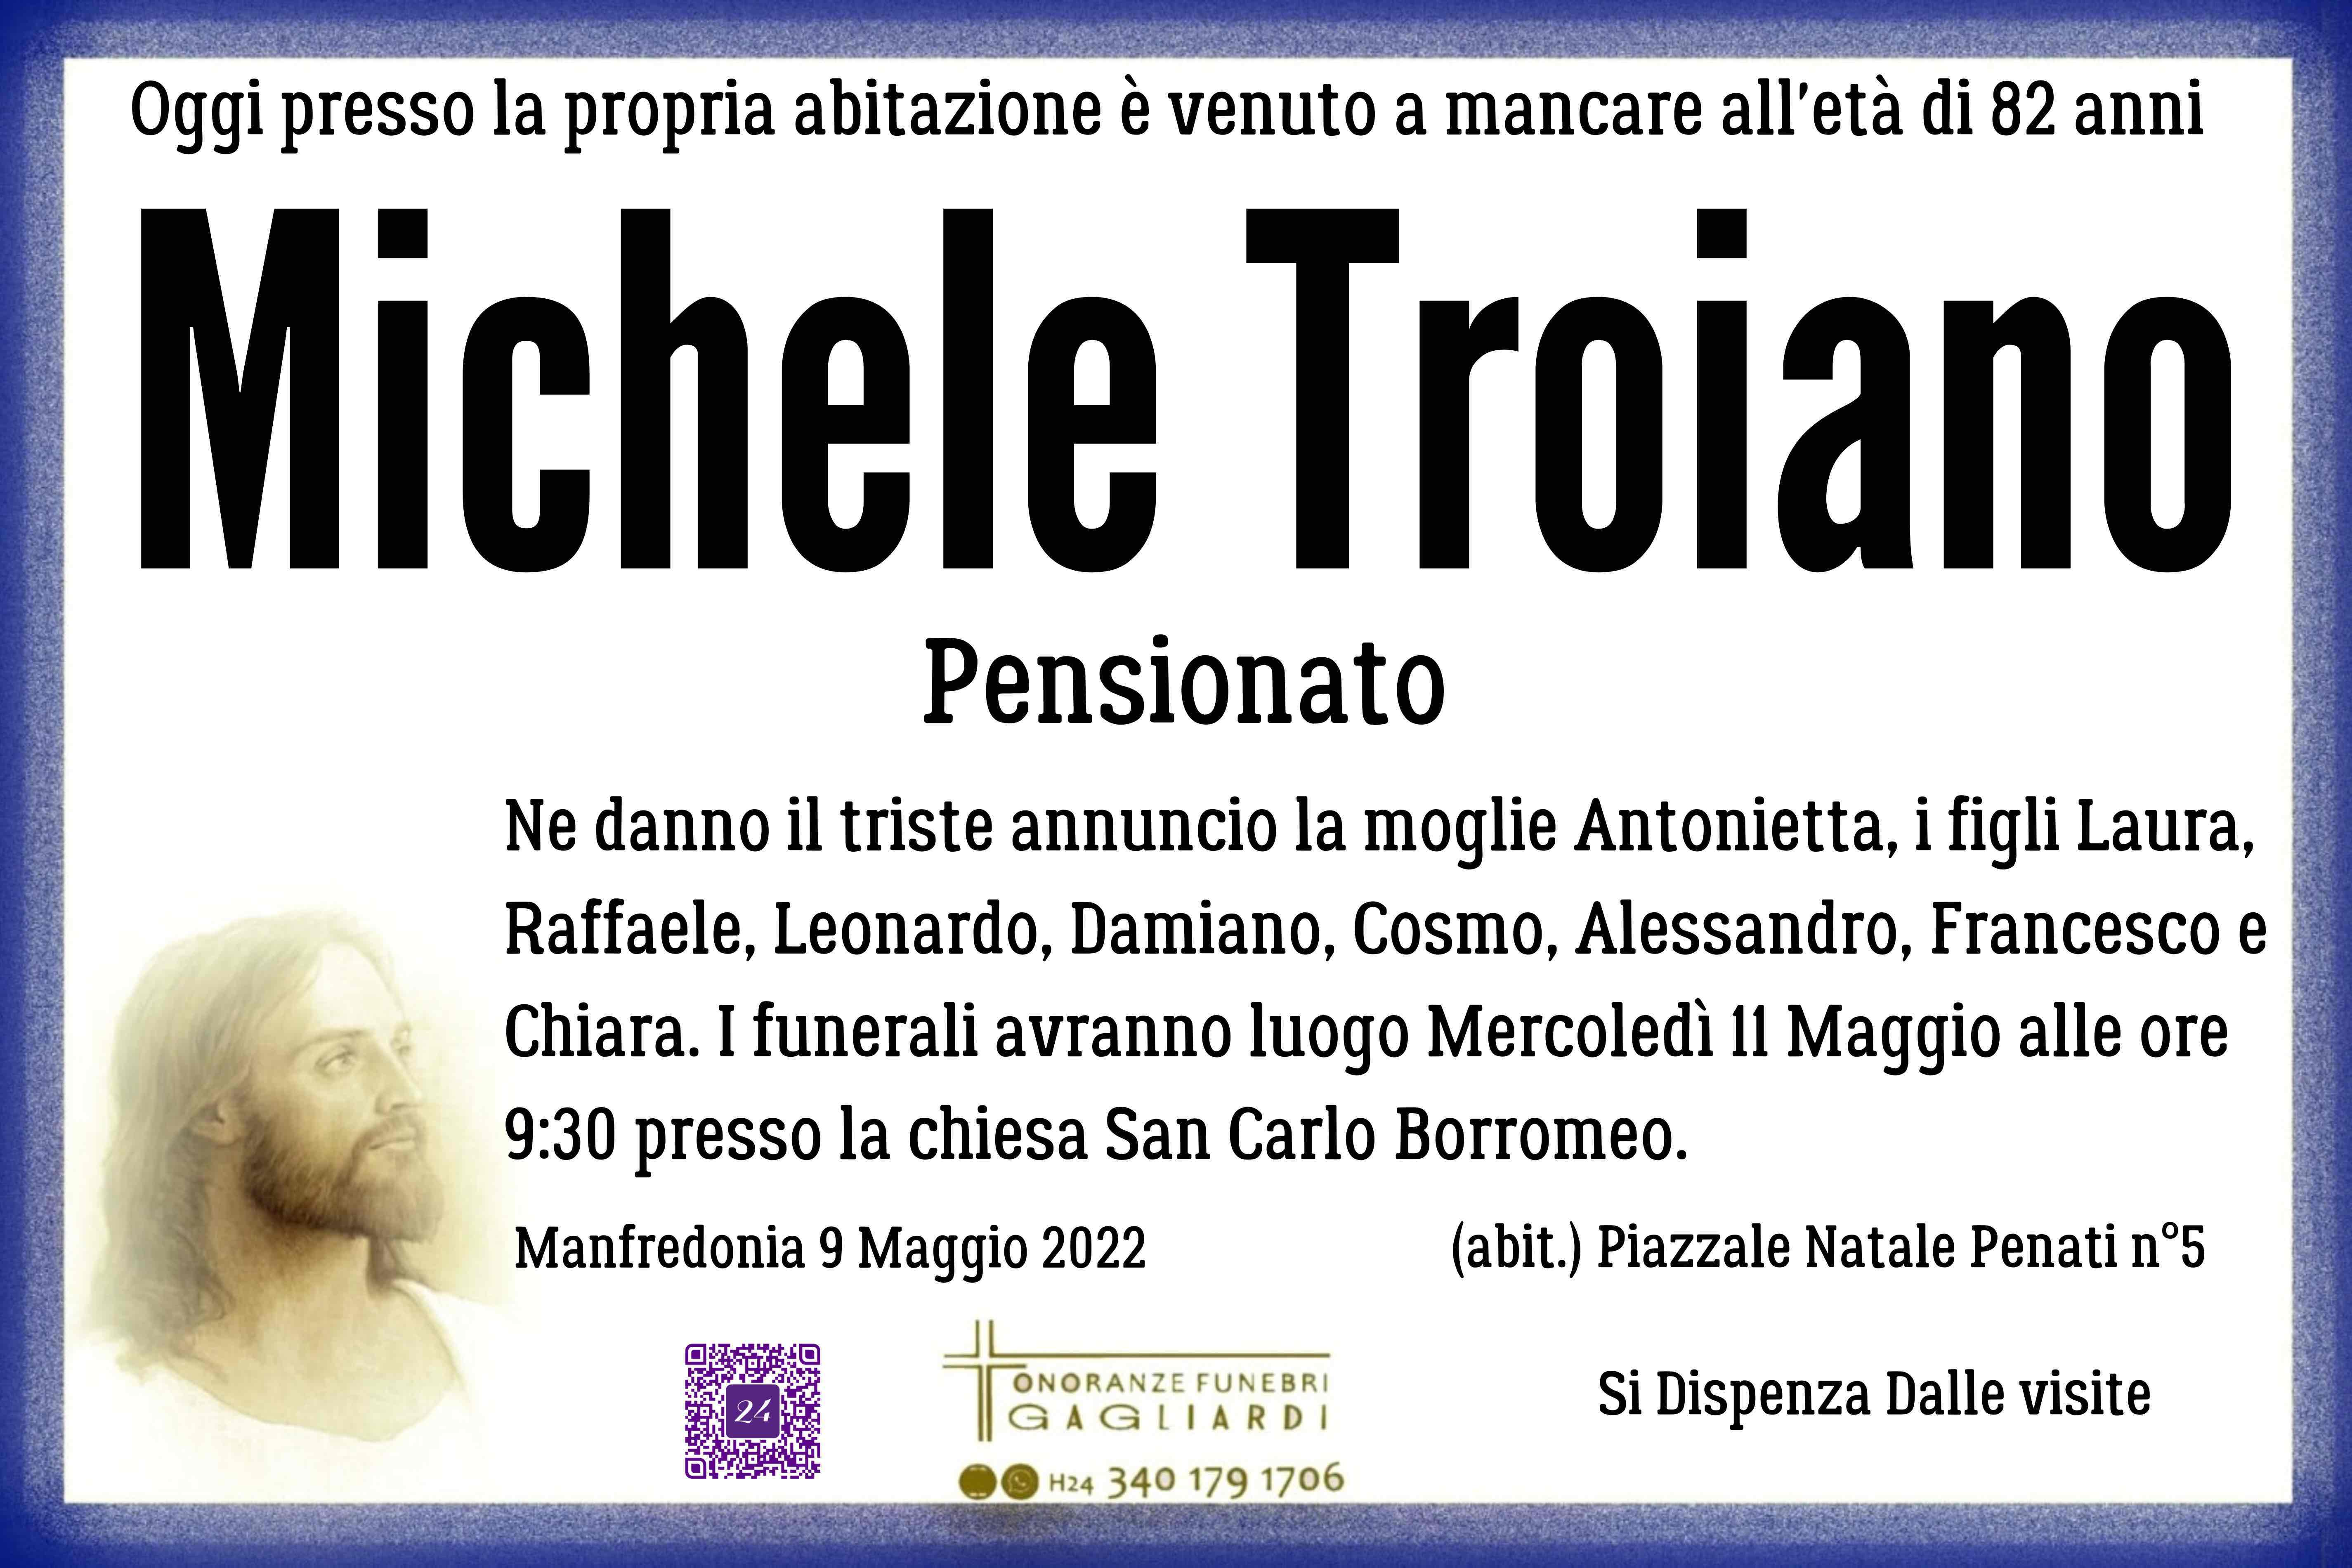 Michele Troiano